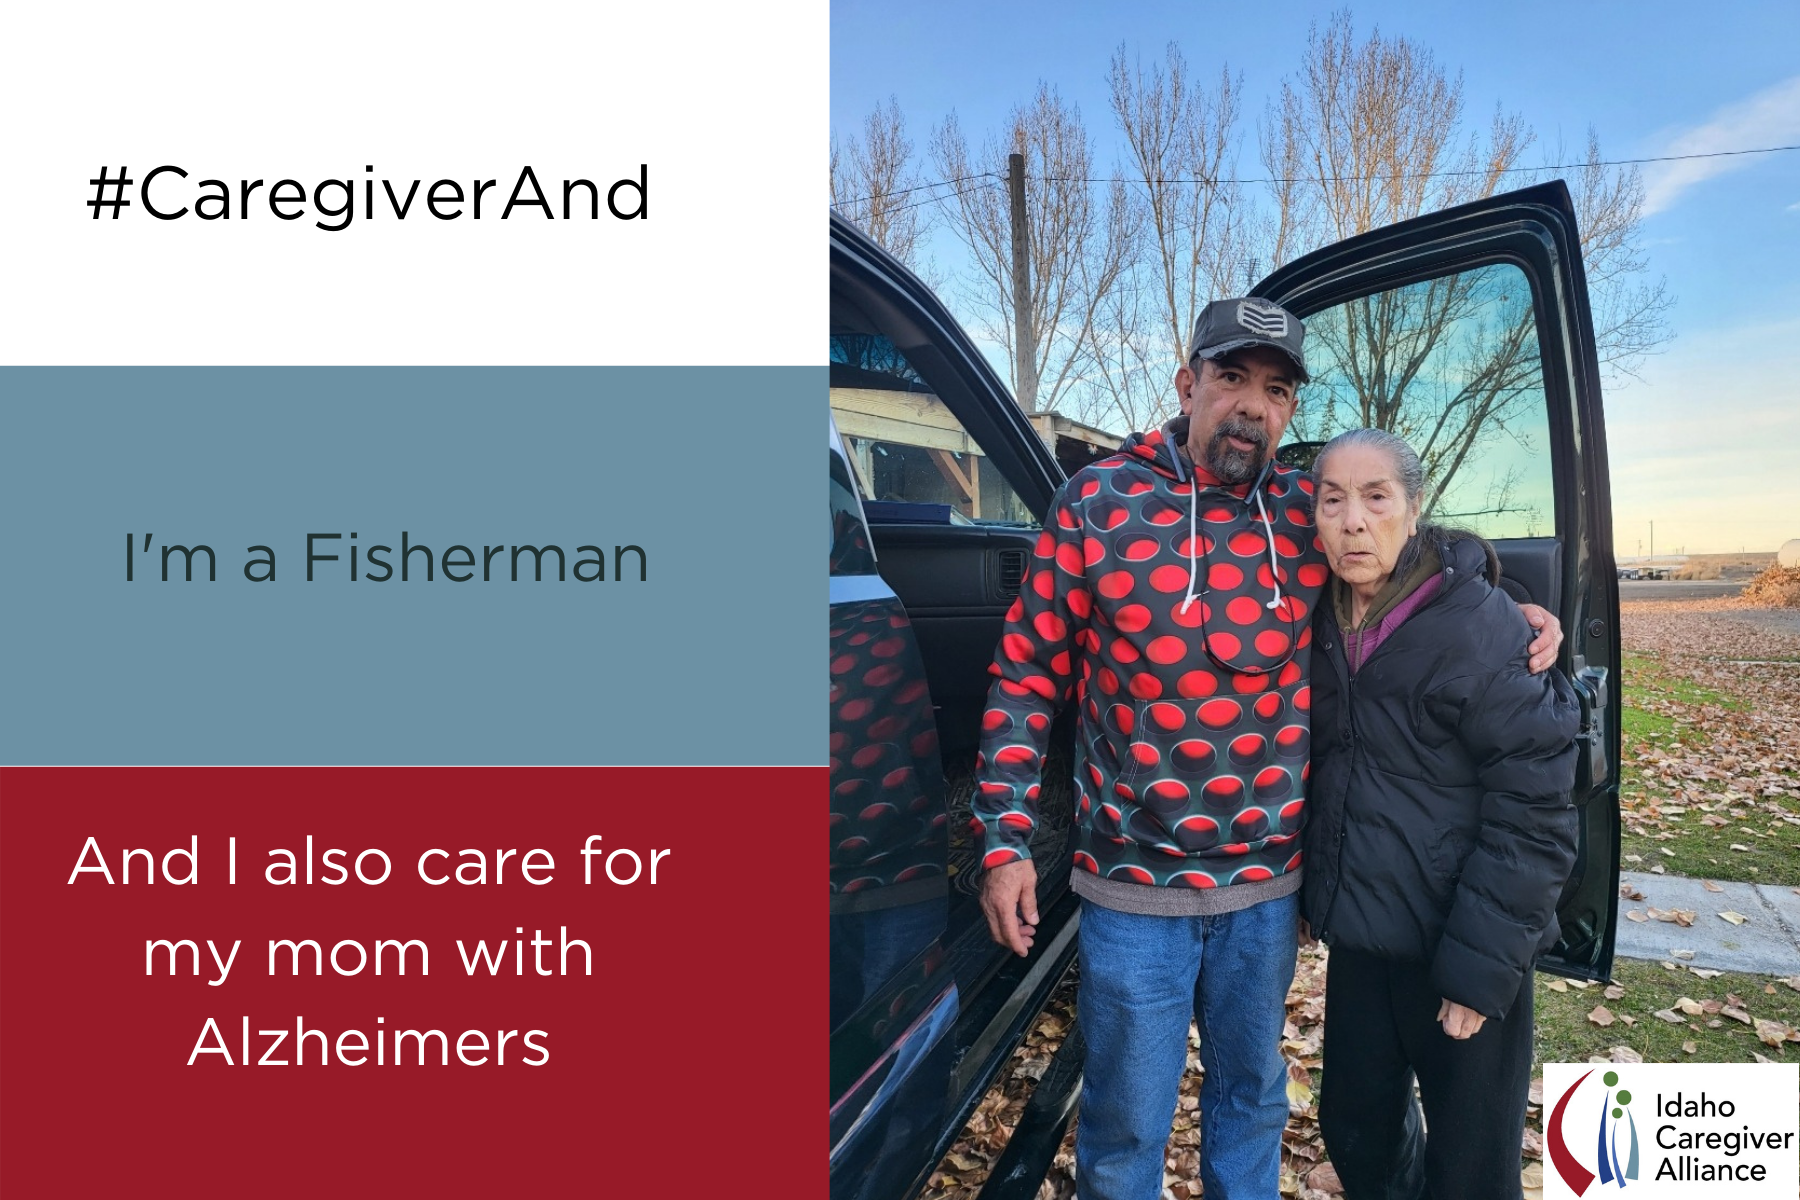 Tony Chapa #CaregiverAnd Fisherman